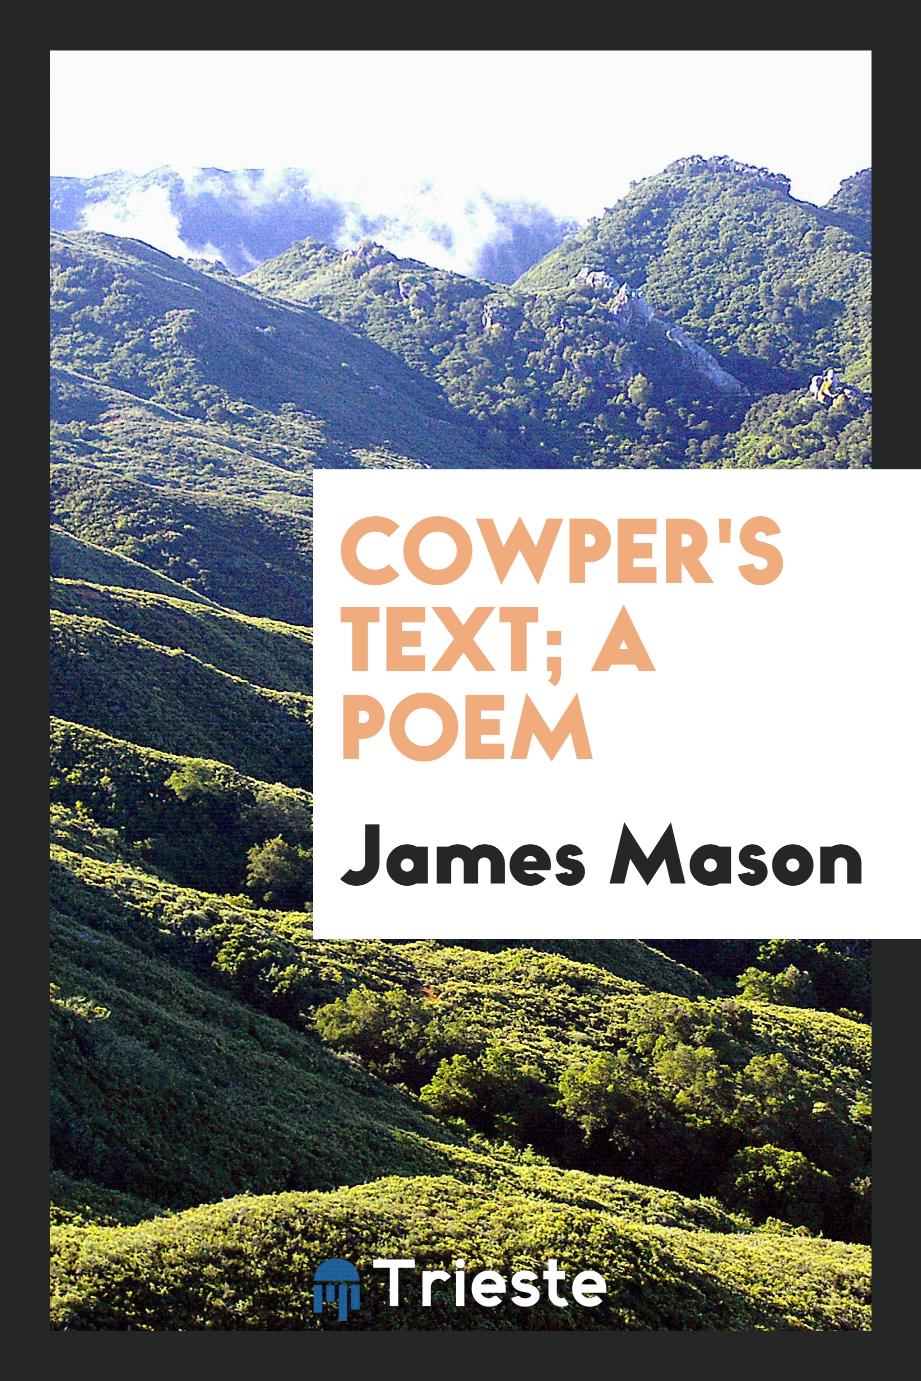 Cowper's text; a poem